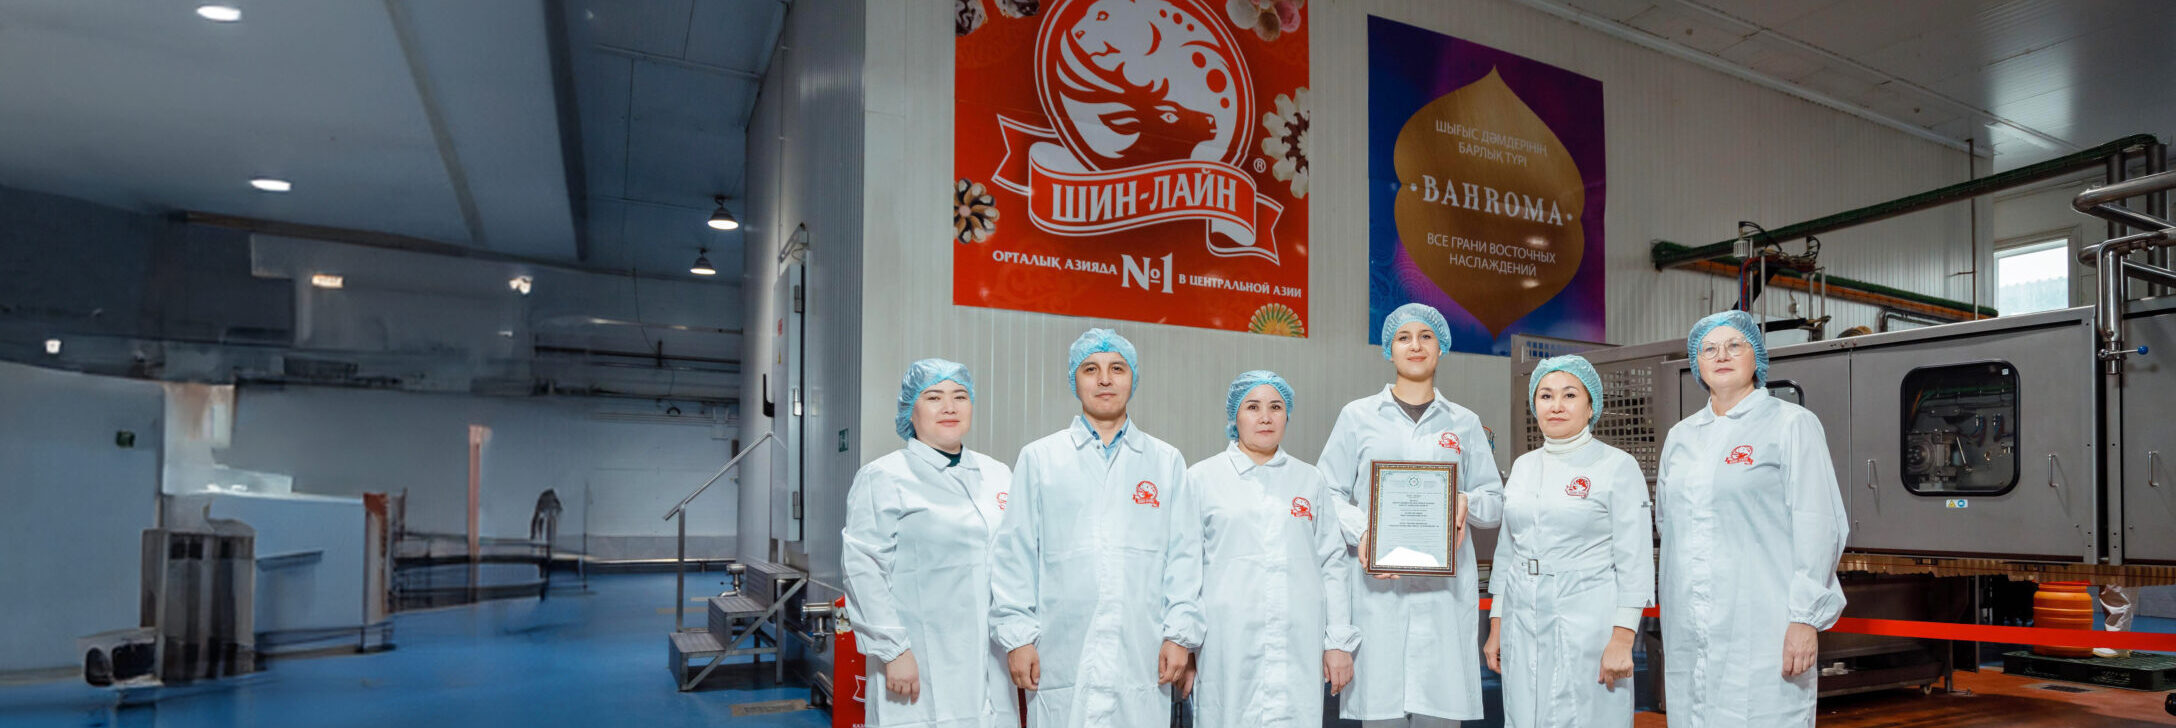 «Шин-Лайн» балмұздағы Halal стандарттарына сәйкес келеді: халықаралық сертификат алынды